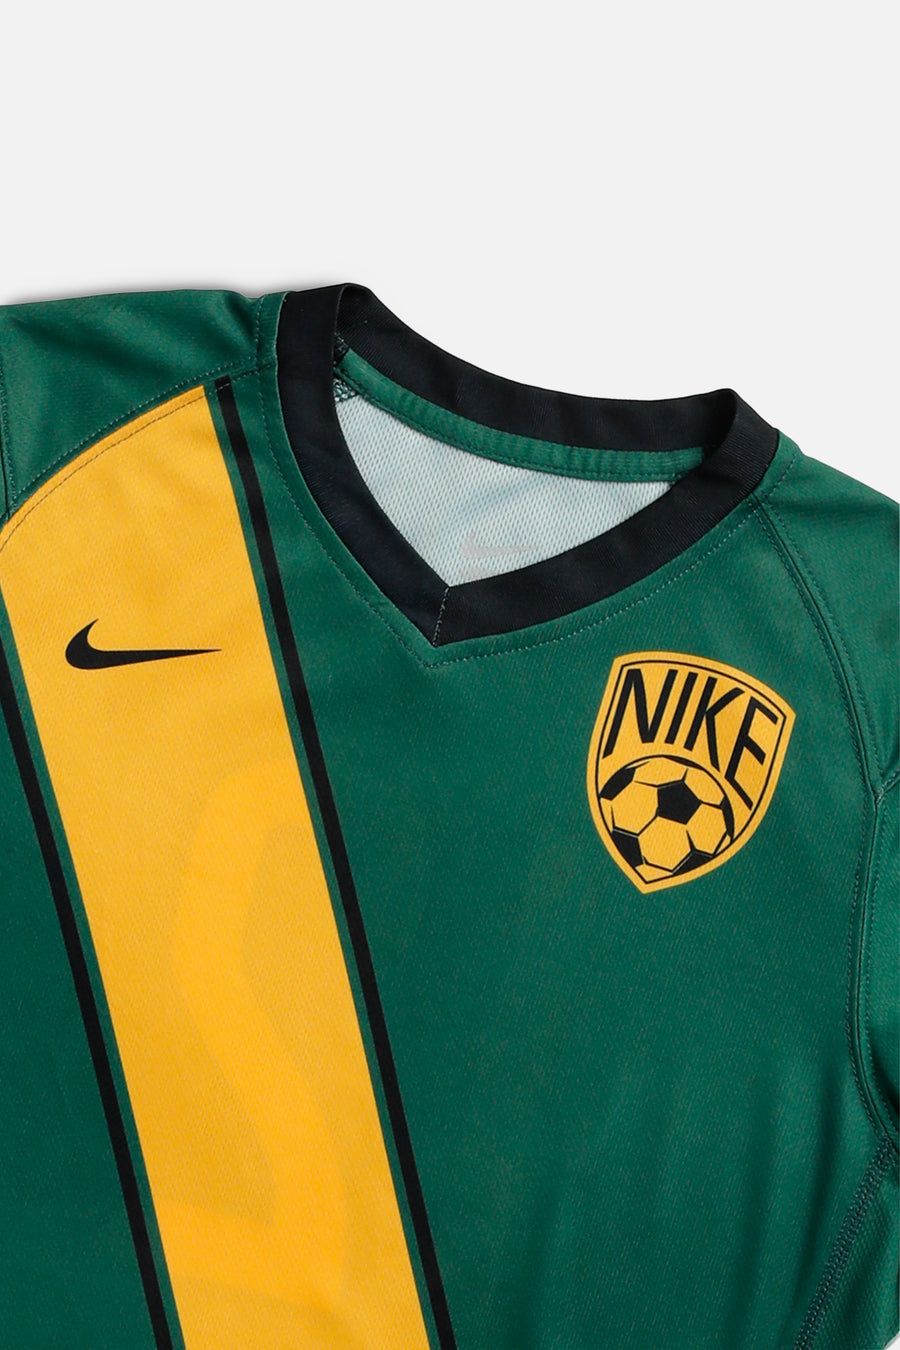 Nike Soccer Long Sleeve Jersey - Women's S